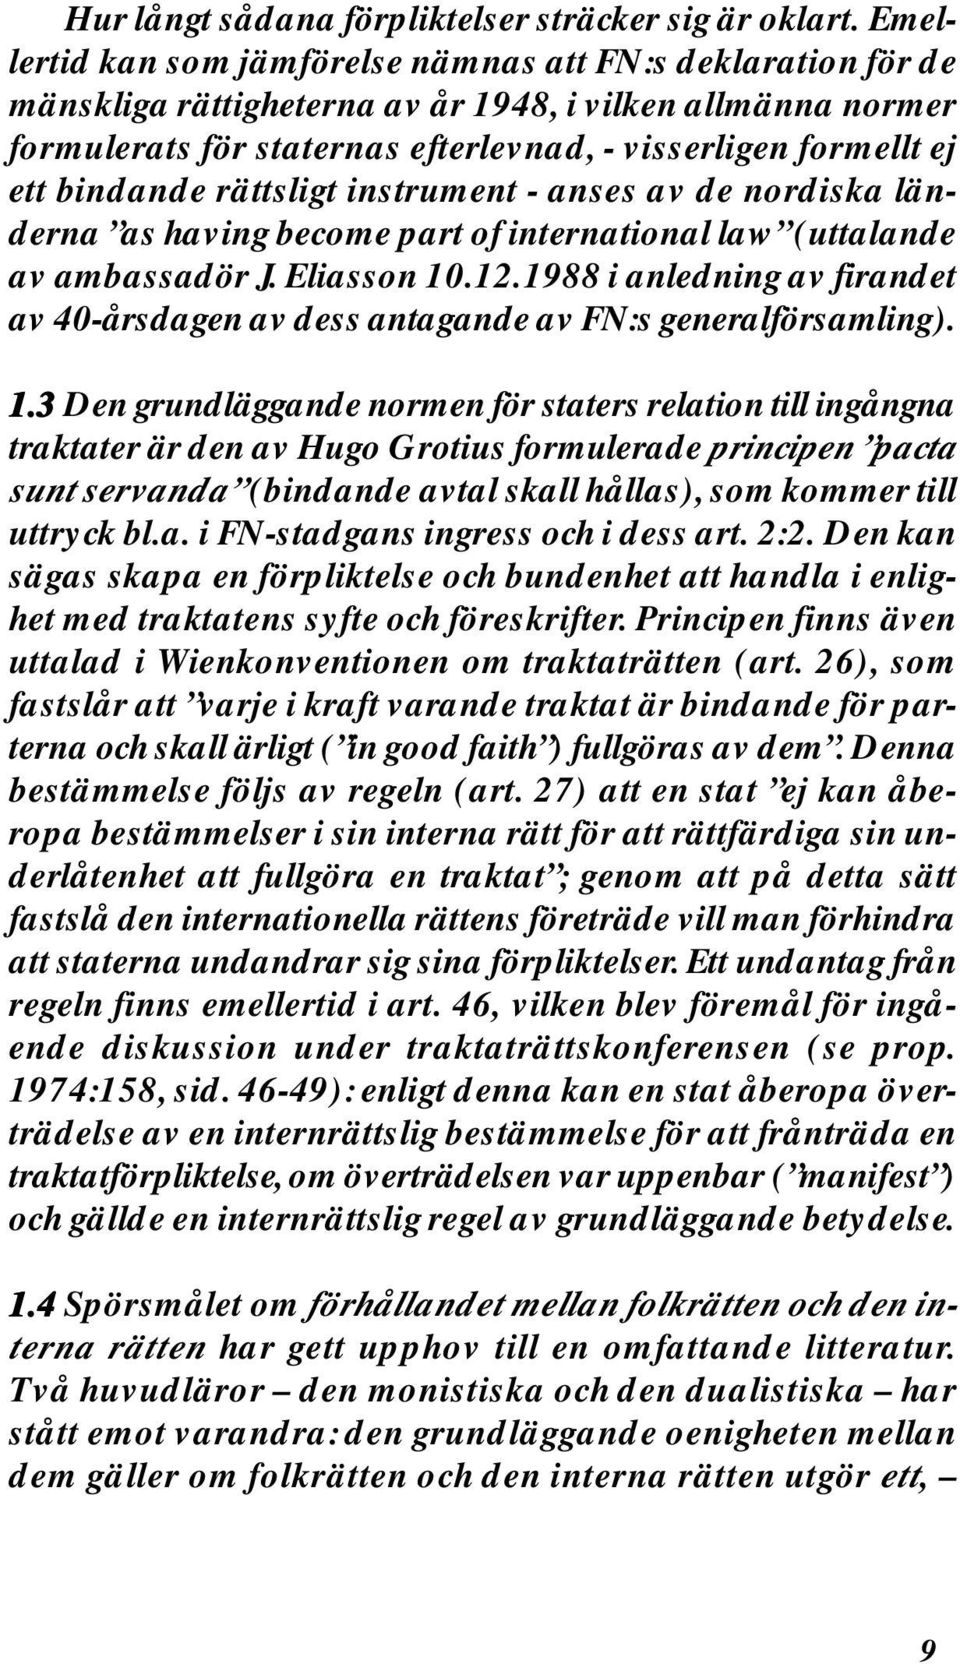 bindande rättsligt instrument - anses av de nordiska länderna as having become part of international law (uttalande av ambassadör J. Eliasson 10.12.